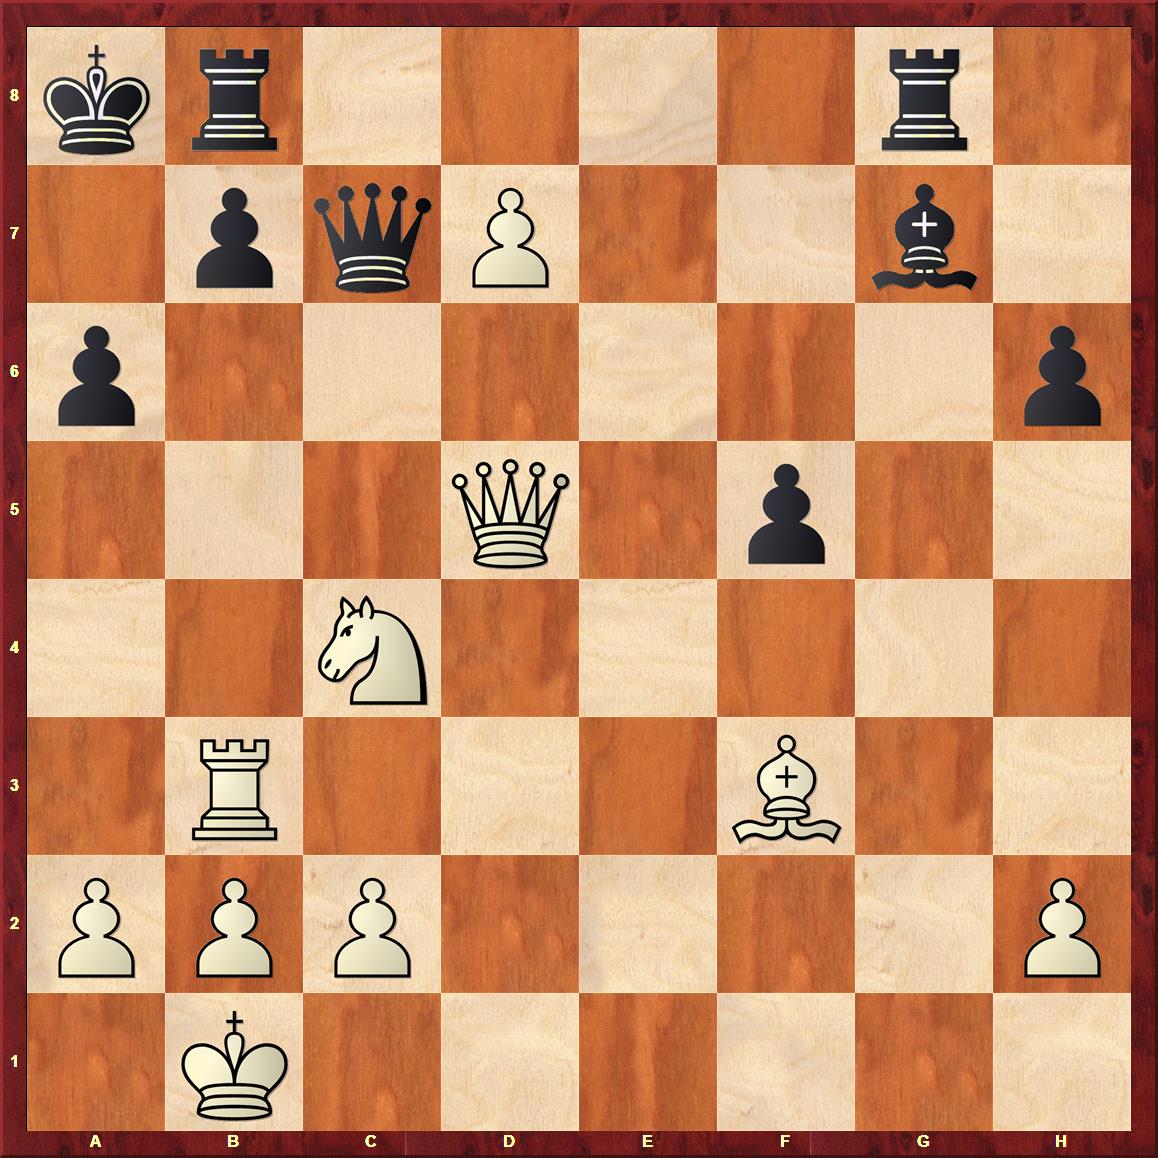 Weiß gewann mit 38.Txb7! Dxb7 (38..Txb7 39.Dxg8+ nebst d8D) 39.De6! mit der hübschen Pointe 39...Dxf3 40.Dxa6# Haus und Hof, weshalb dem Schwarzen nur noch die Aufgabe blieb